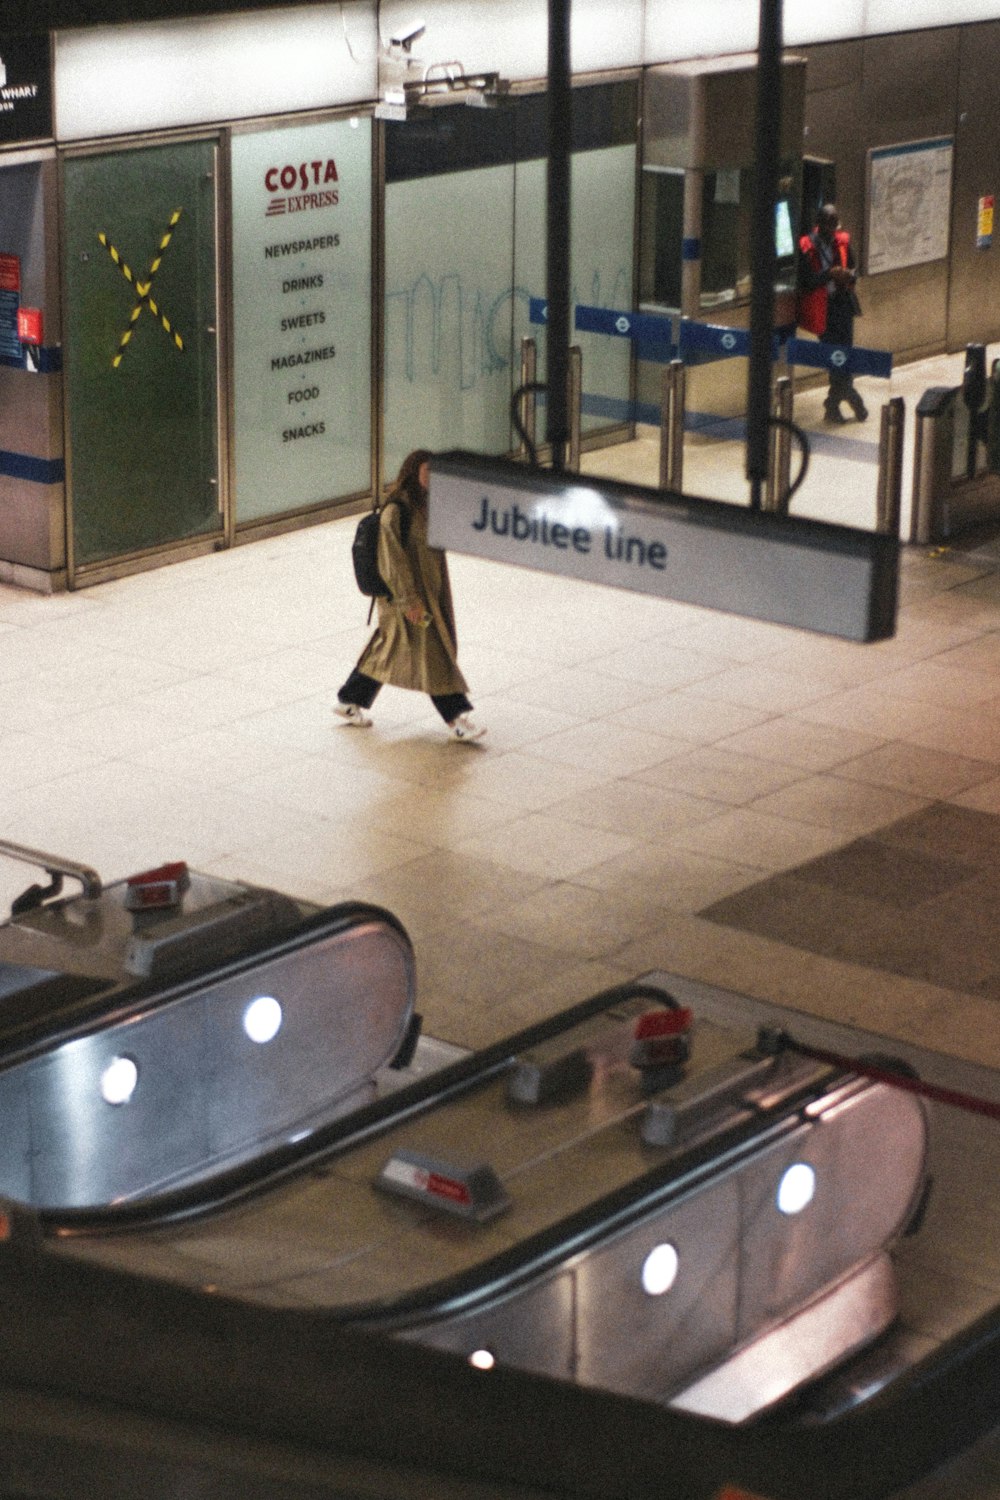 a woman is walking through an airport terminal